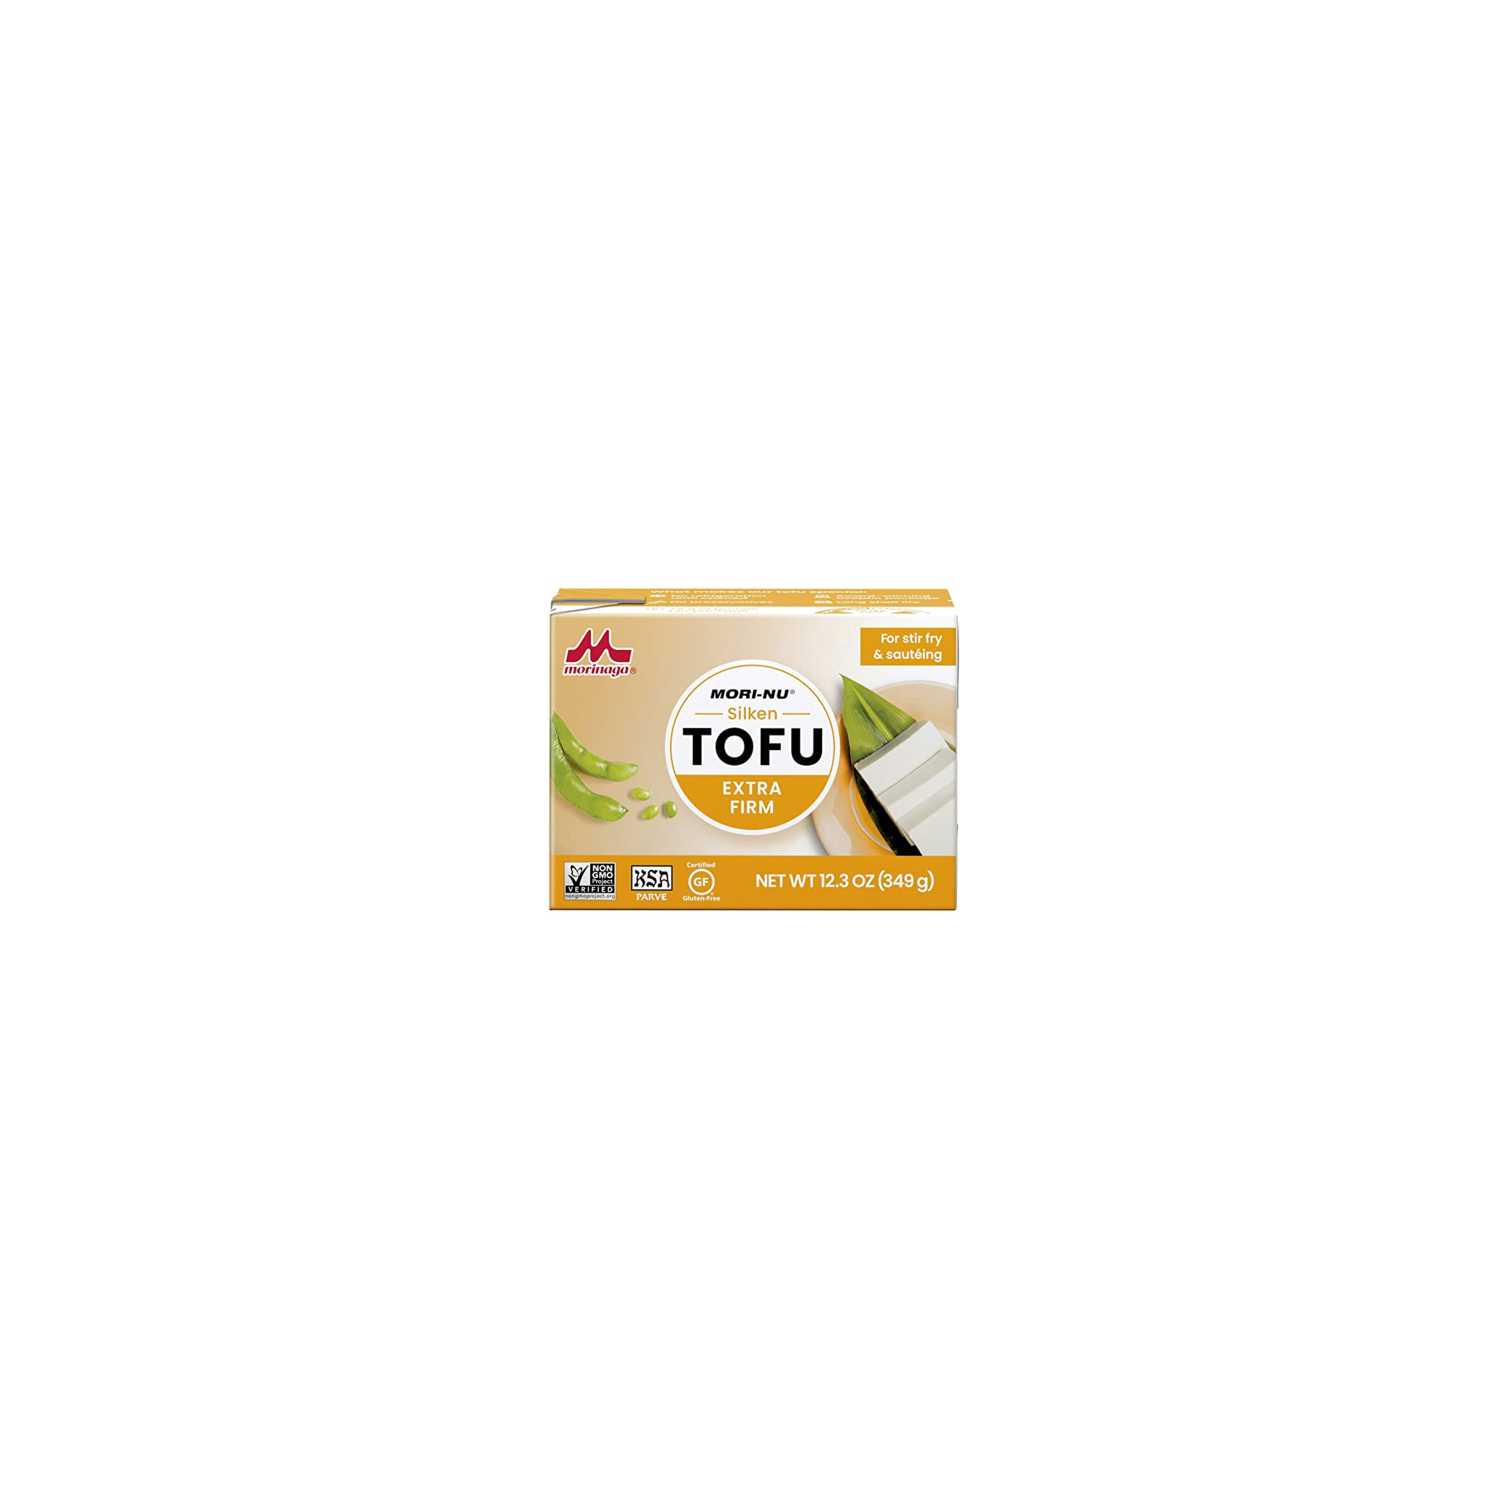 Tofu extra firm orange Morinaga 349g